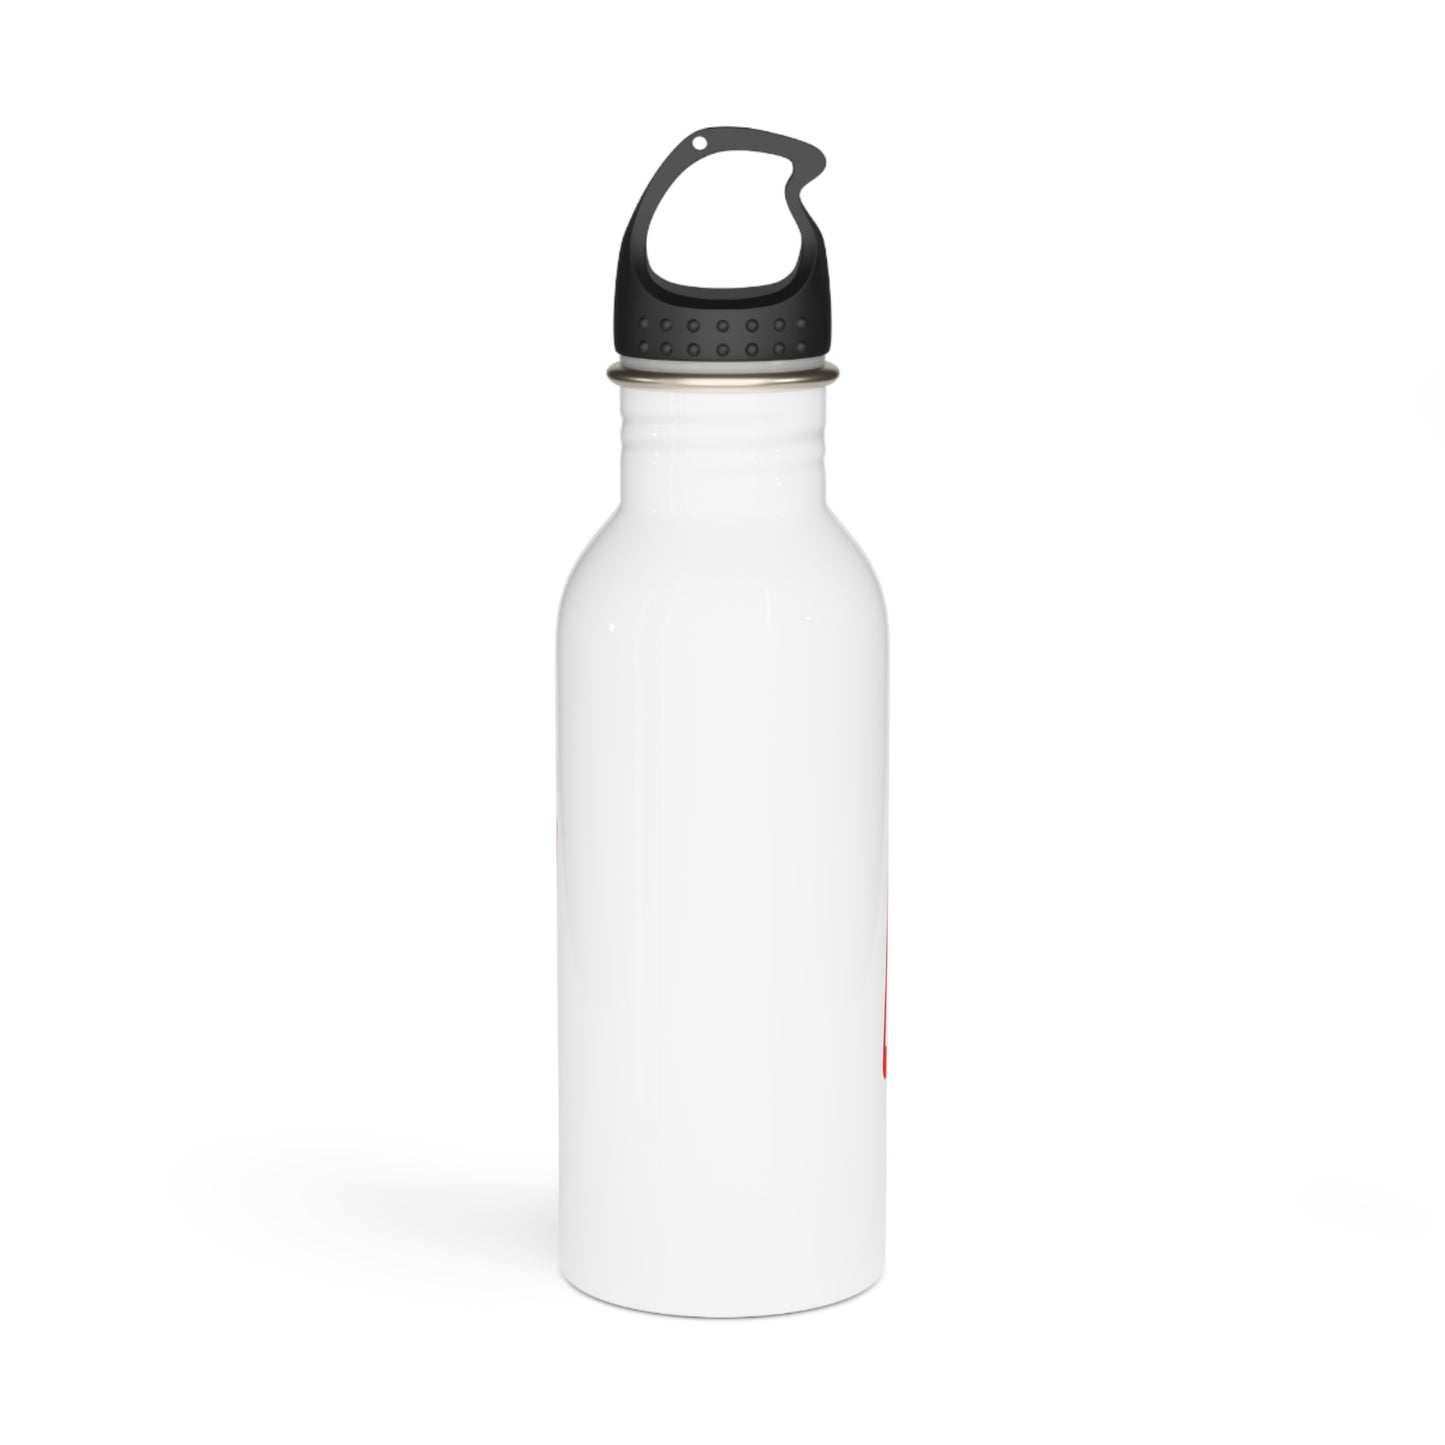 Runner Stainless Steel Water Bottle 2